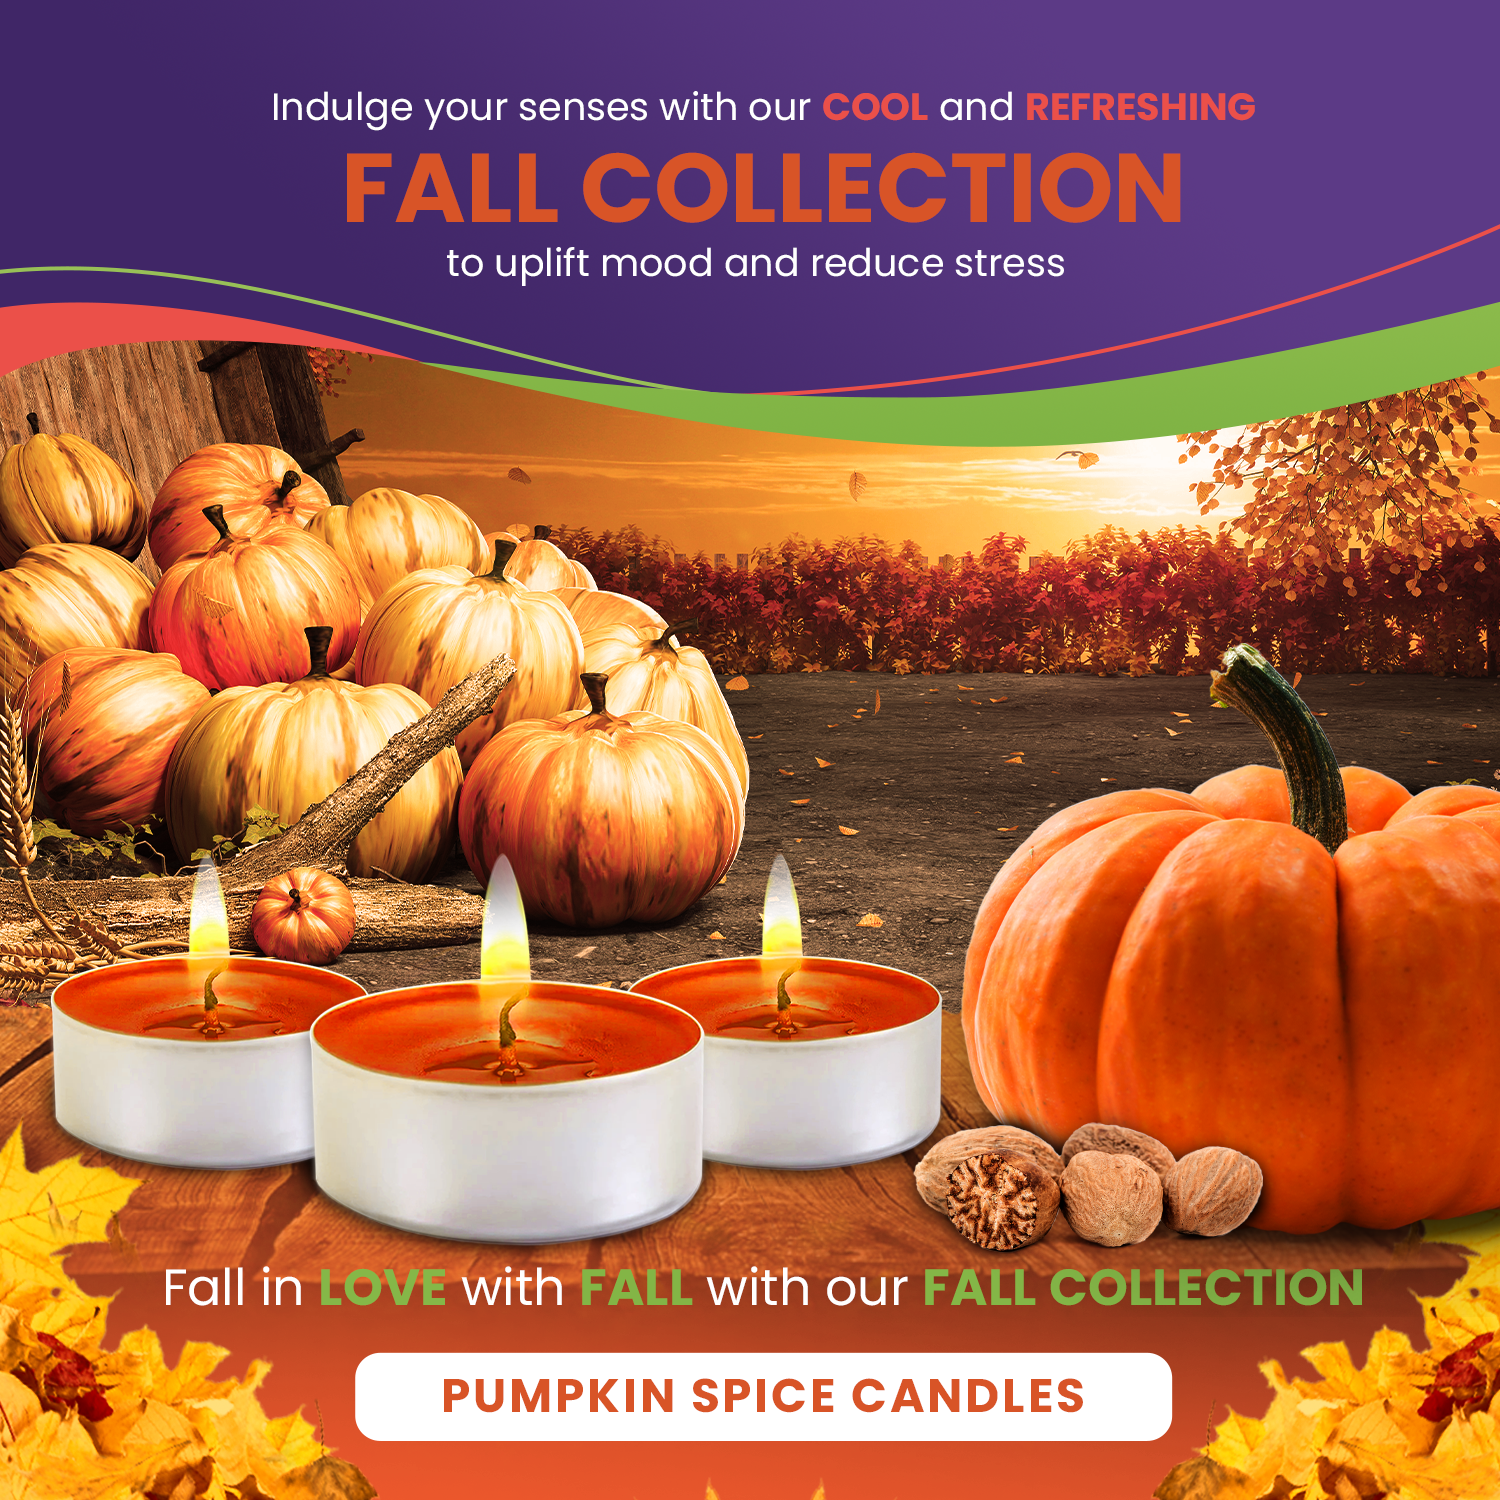 Scented Tealights Bundle - Pumpkin Spice, Apple Cinnamon & Sandalwood - 30 Pack each